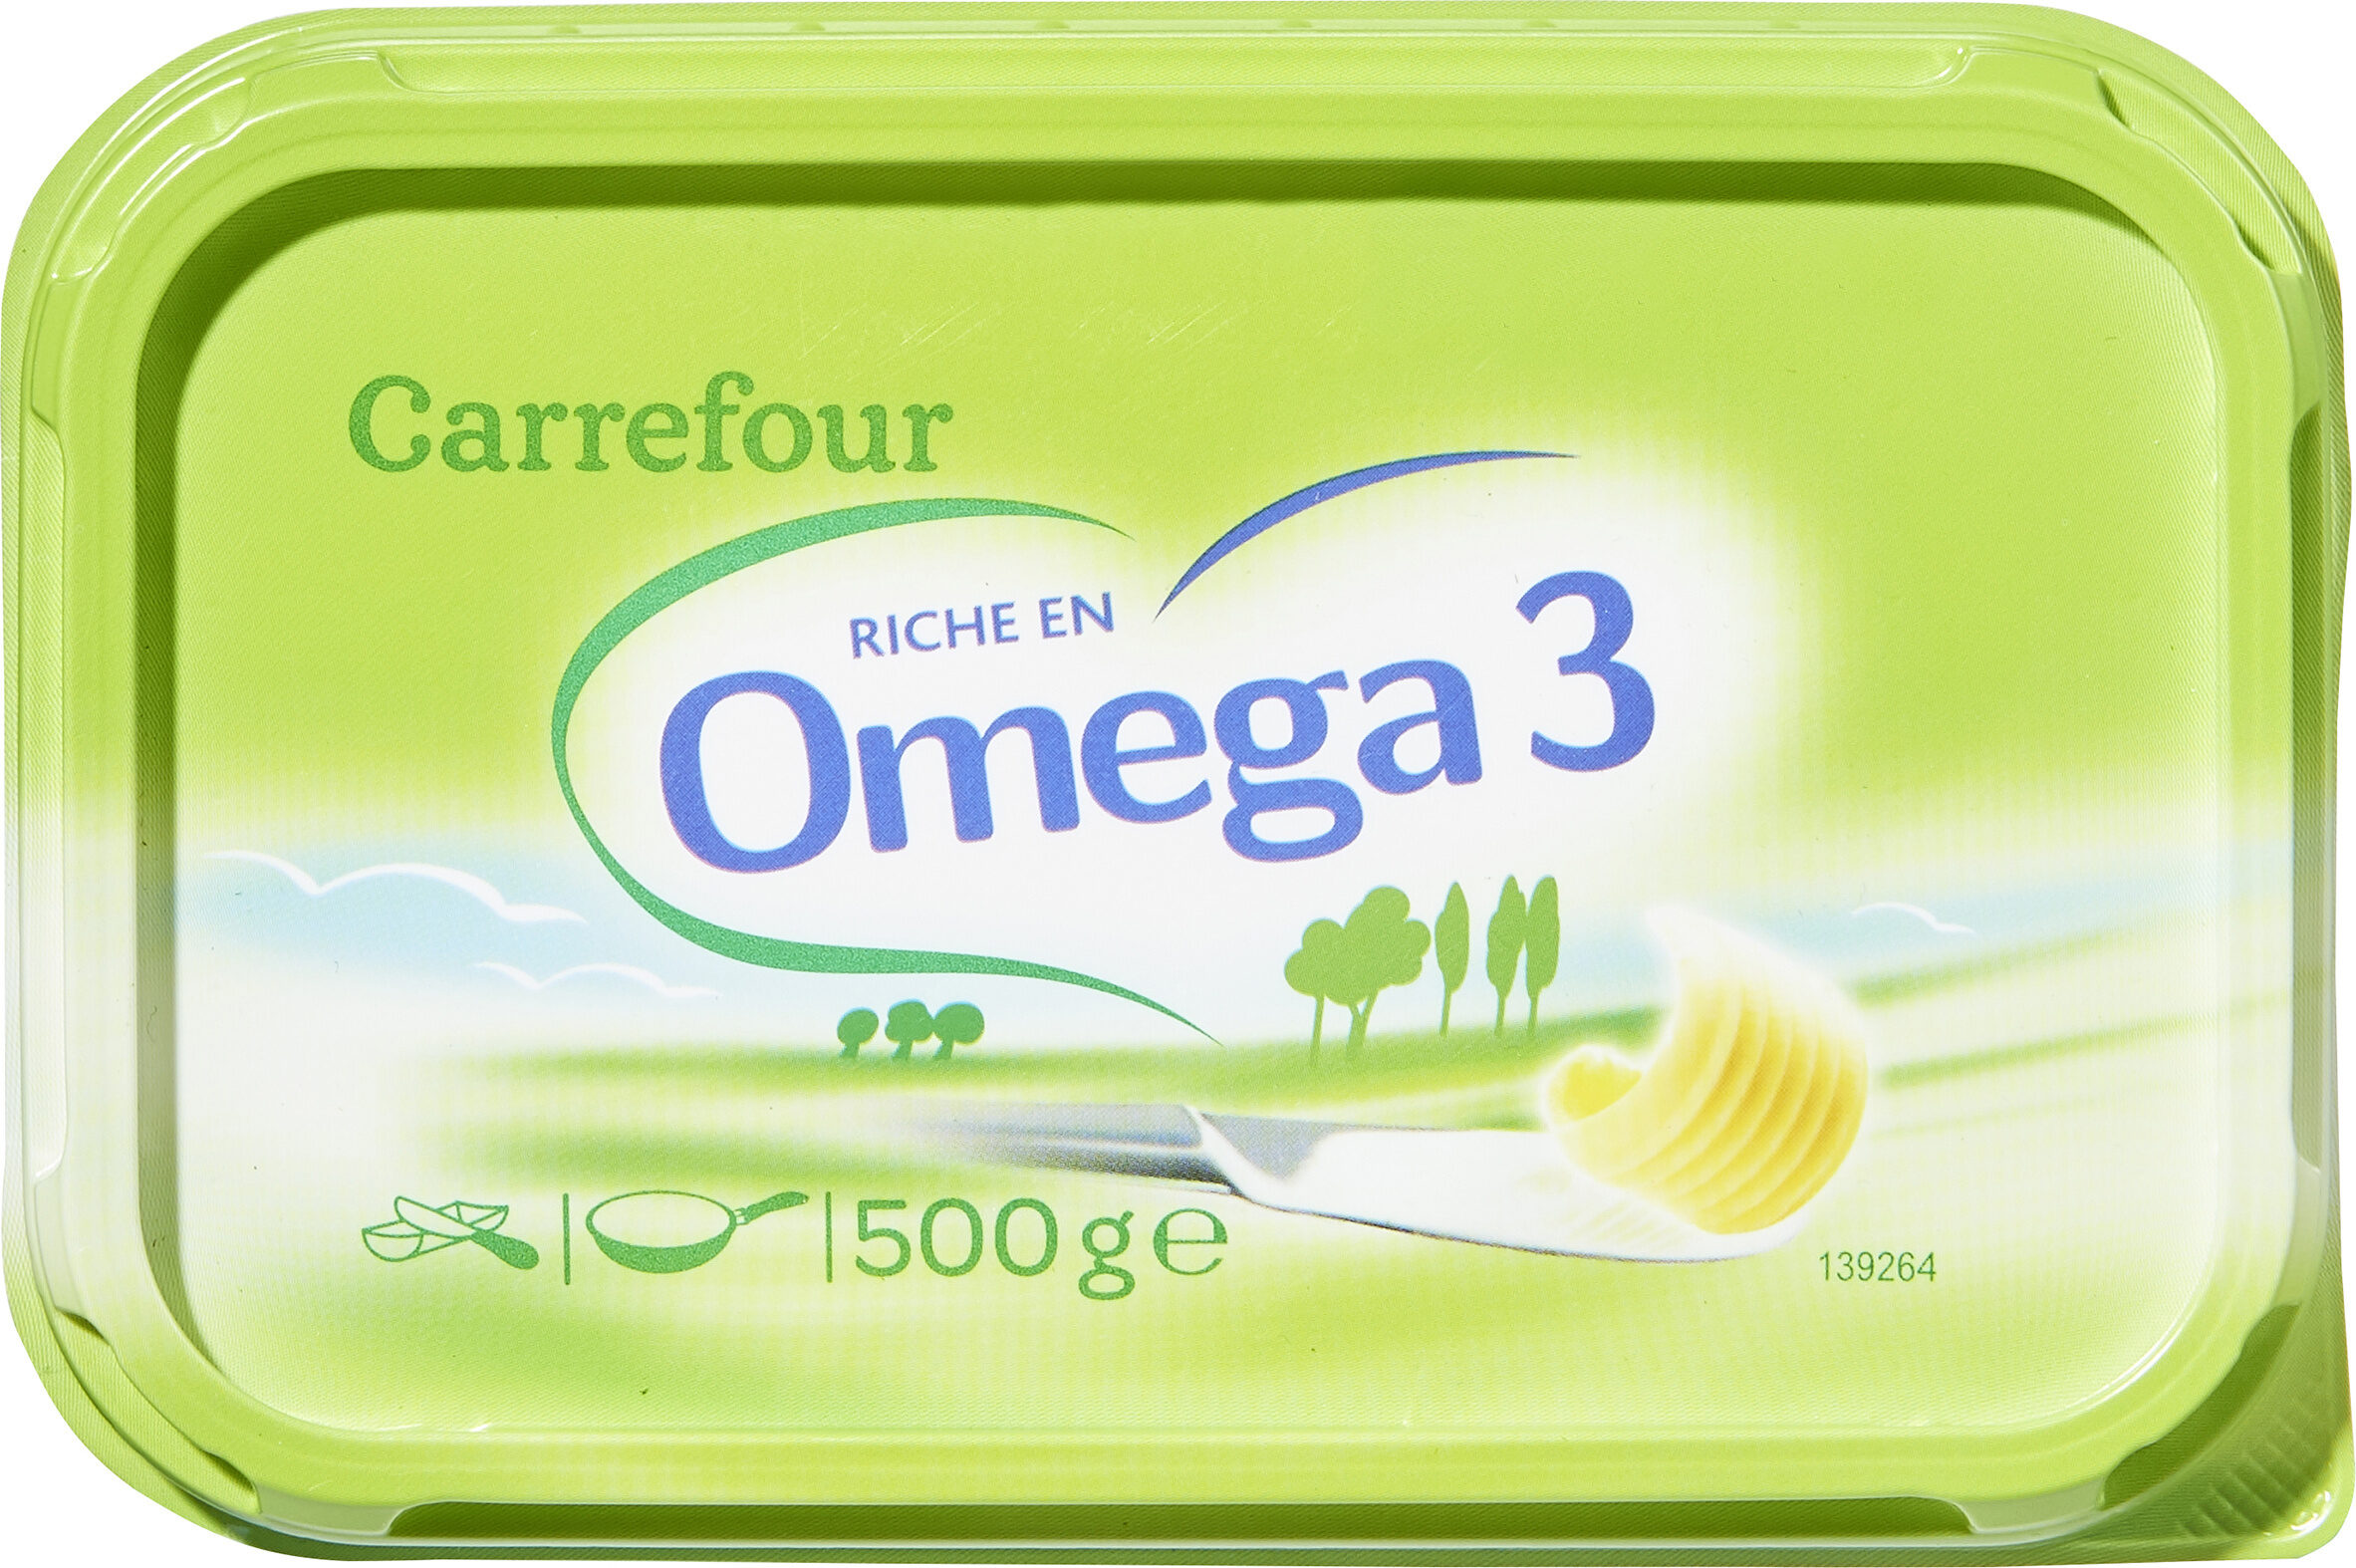 RICHE en omega 3 - Producte - fr